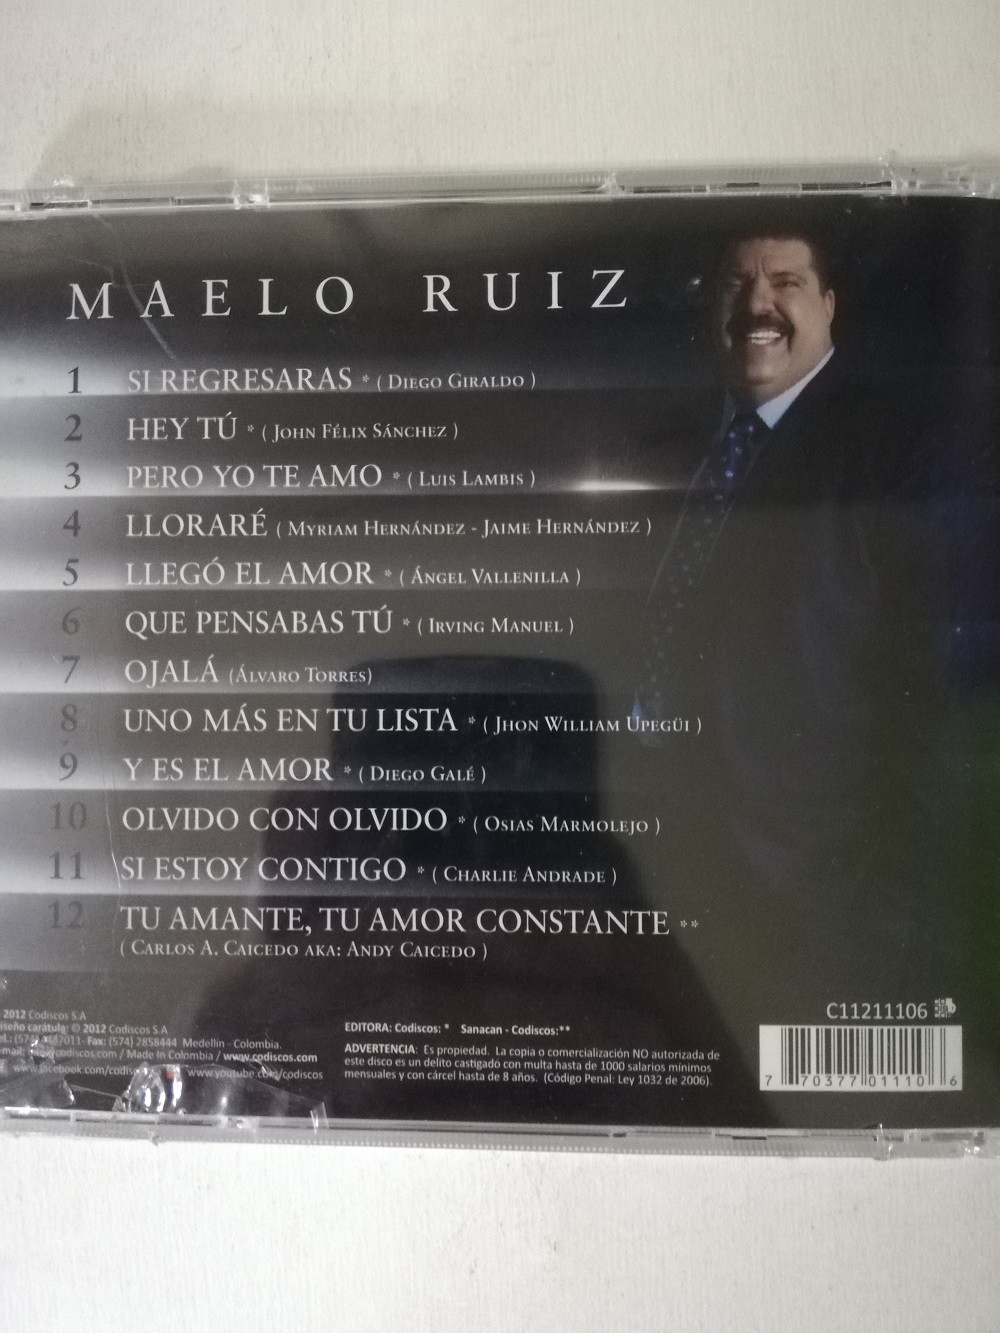 Imagen CD MAELO RUIZ - LO MEJOR DE MI 2